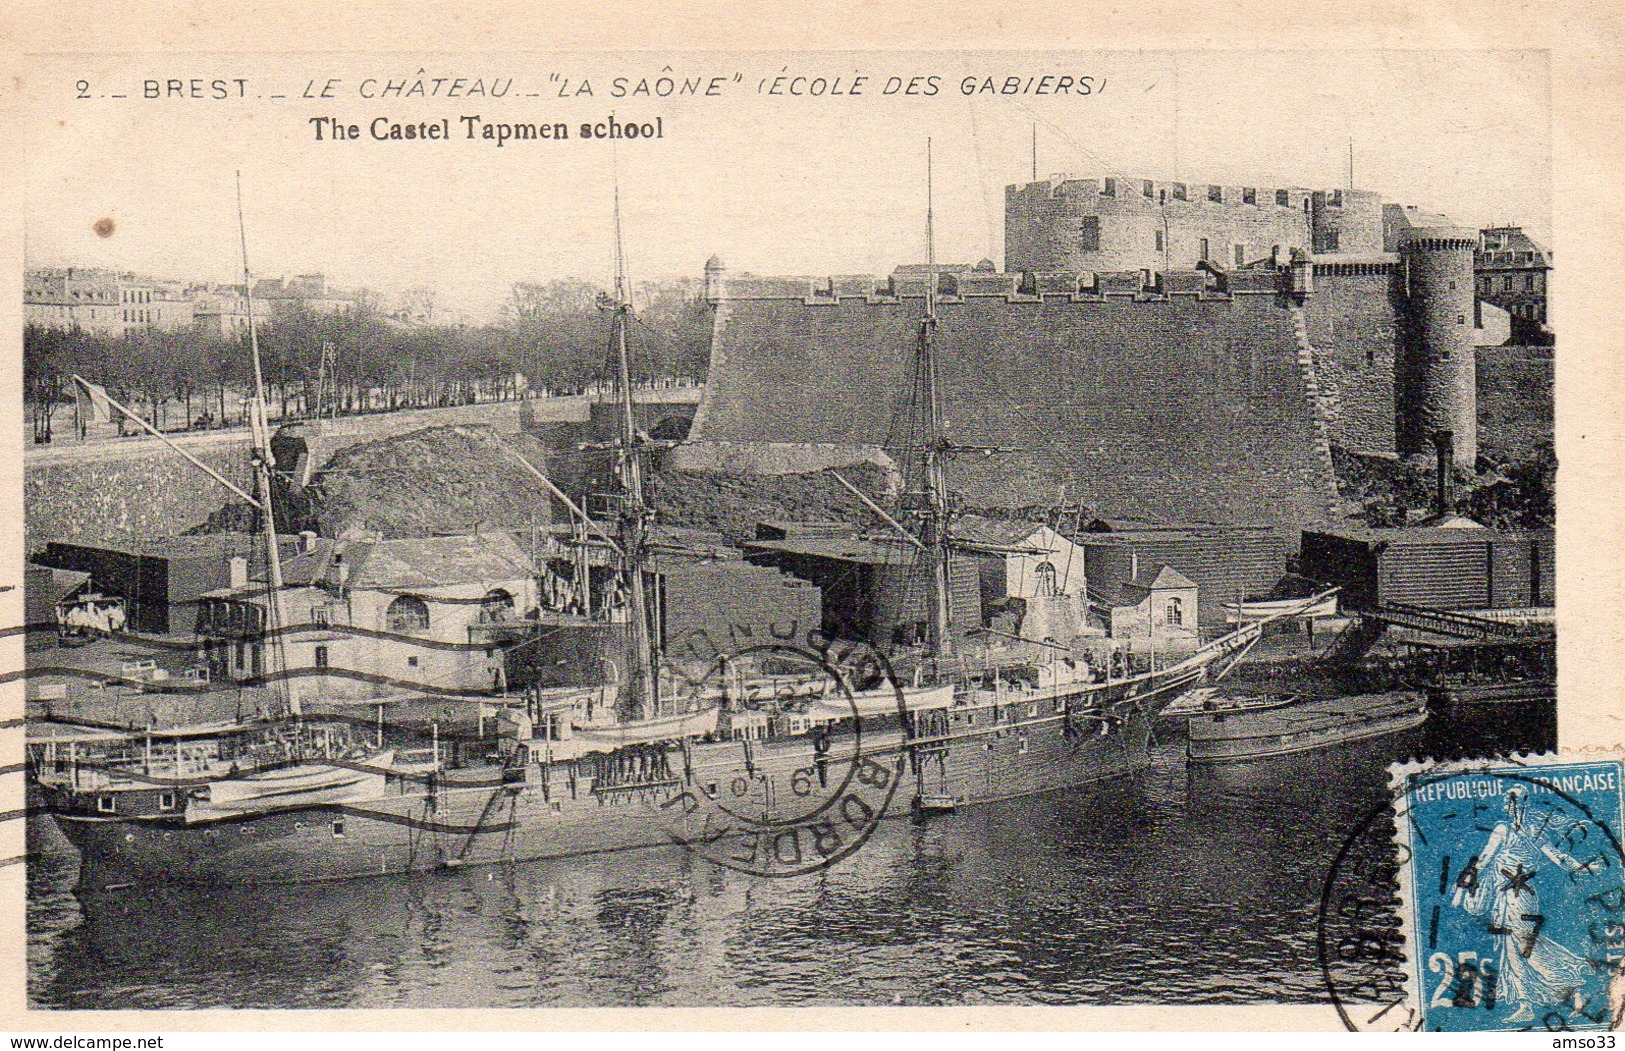 9514. FINISTERE 29 BREST. LE CHATEAU "LA SAÔNE" ECOLE DES GABIERS 1921 - Brest